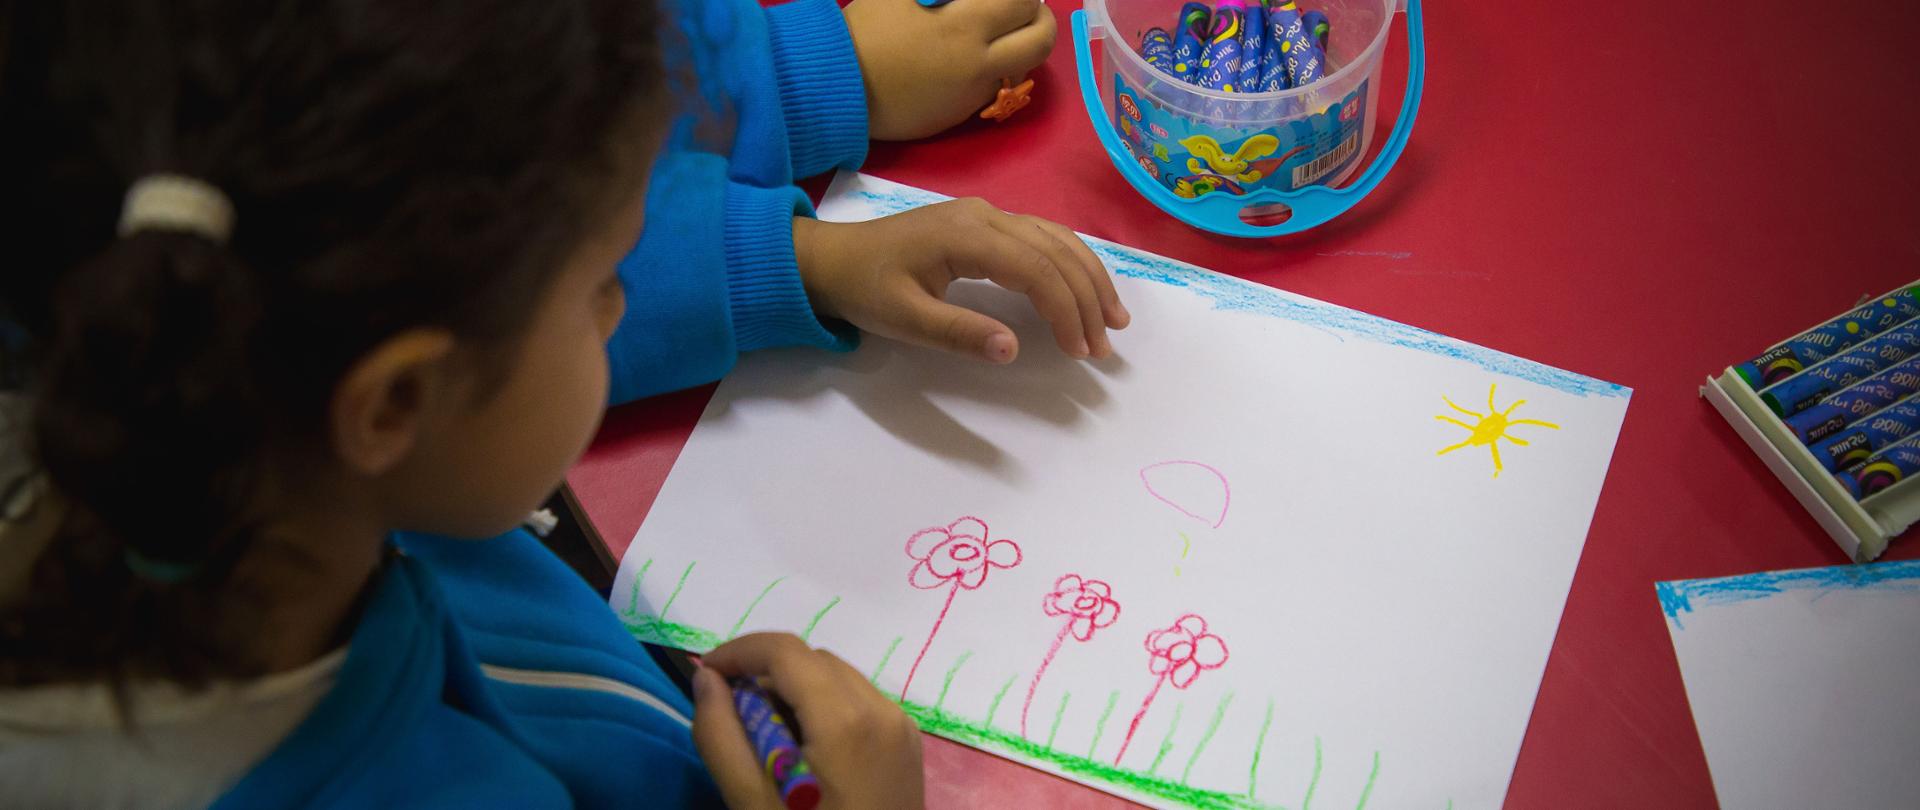 rysunek namalowany przez dziewczynkę - trzy kolorowe kwiatki i słońce